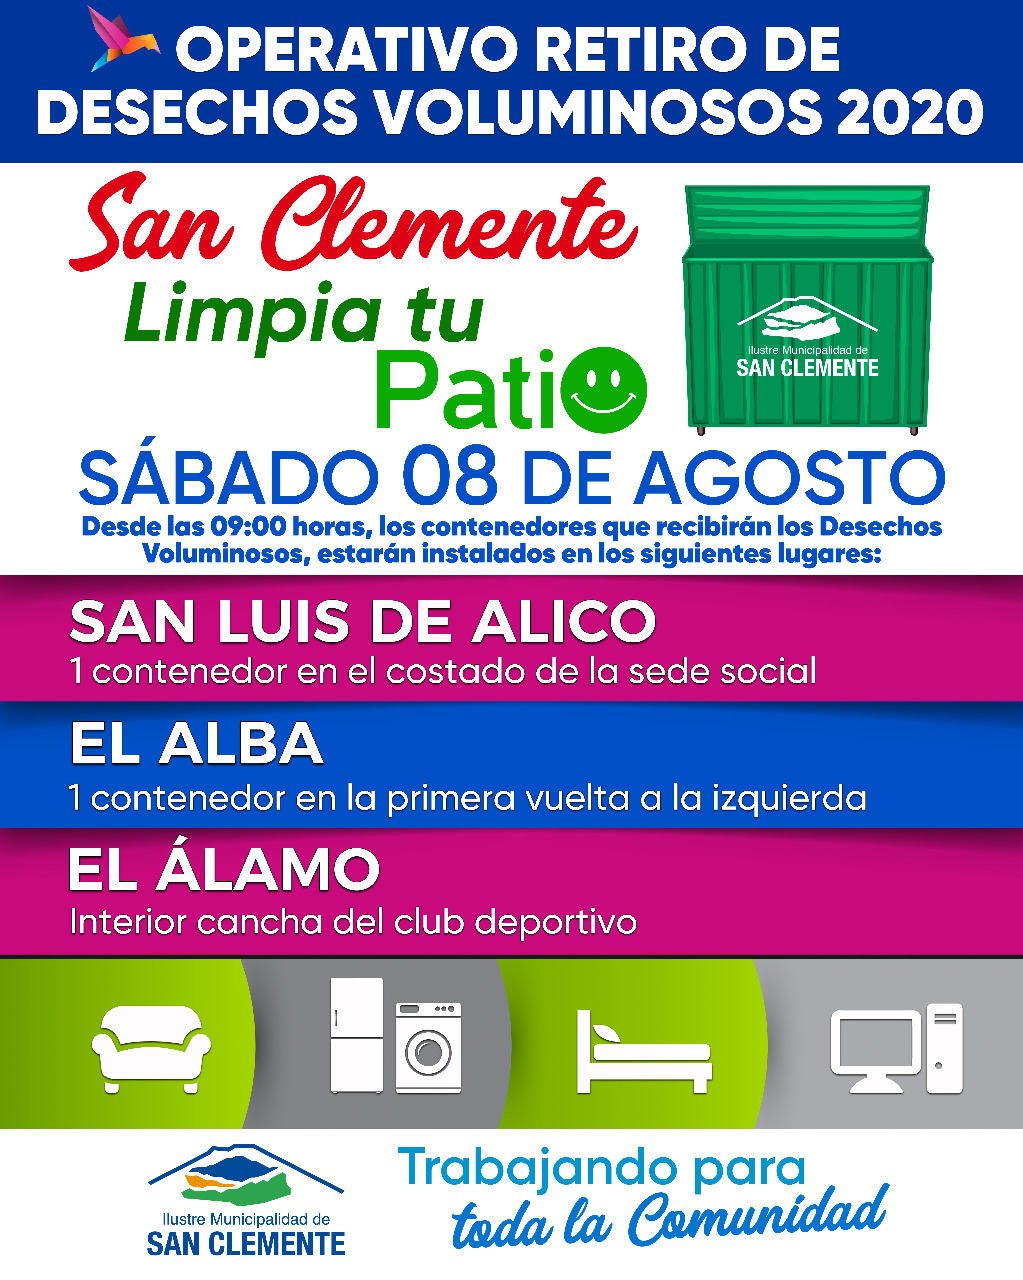 Nuevo operativo de retiro de desechos voluminosos llega este fin de semana a San Luis de Alico, El Alba y El Álamo, en San Clemente